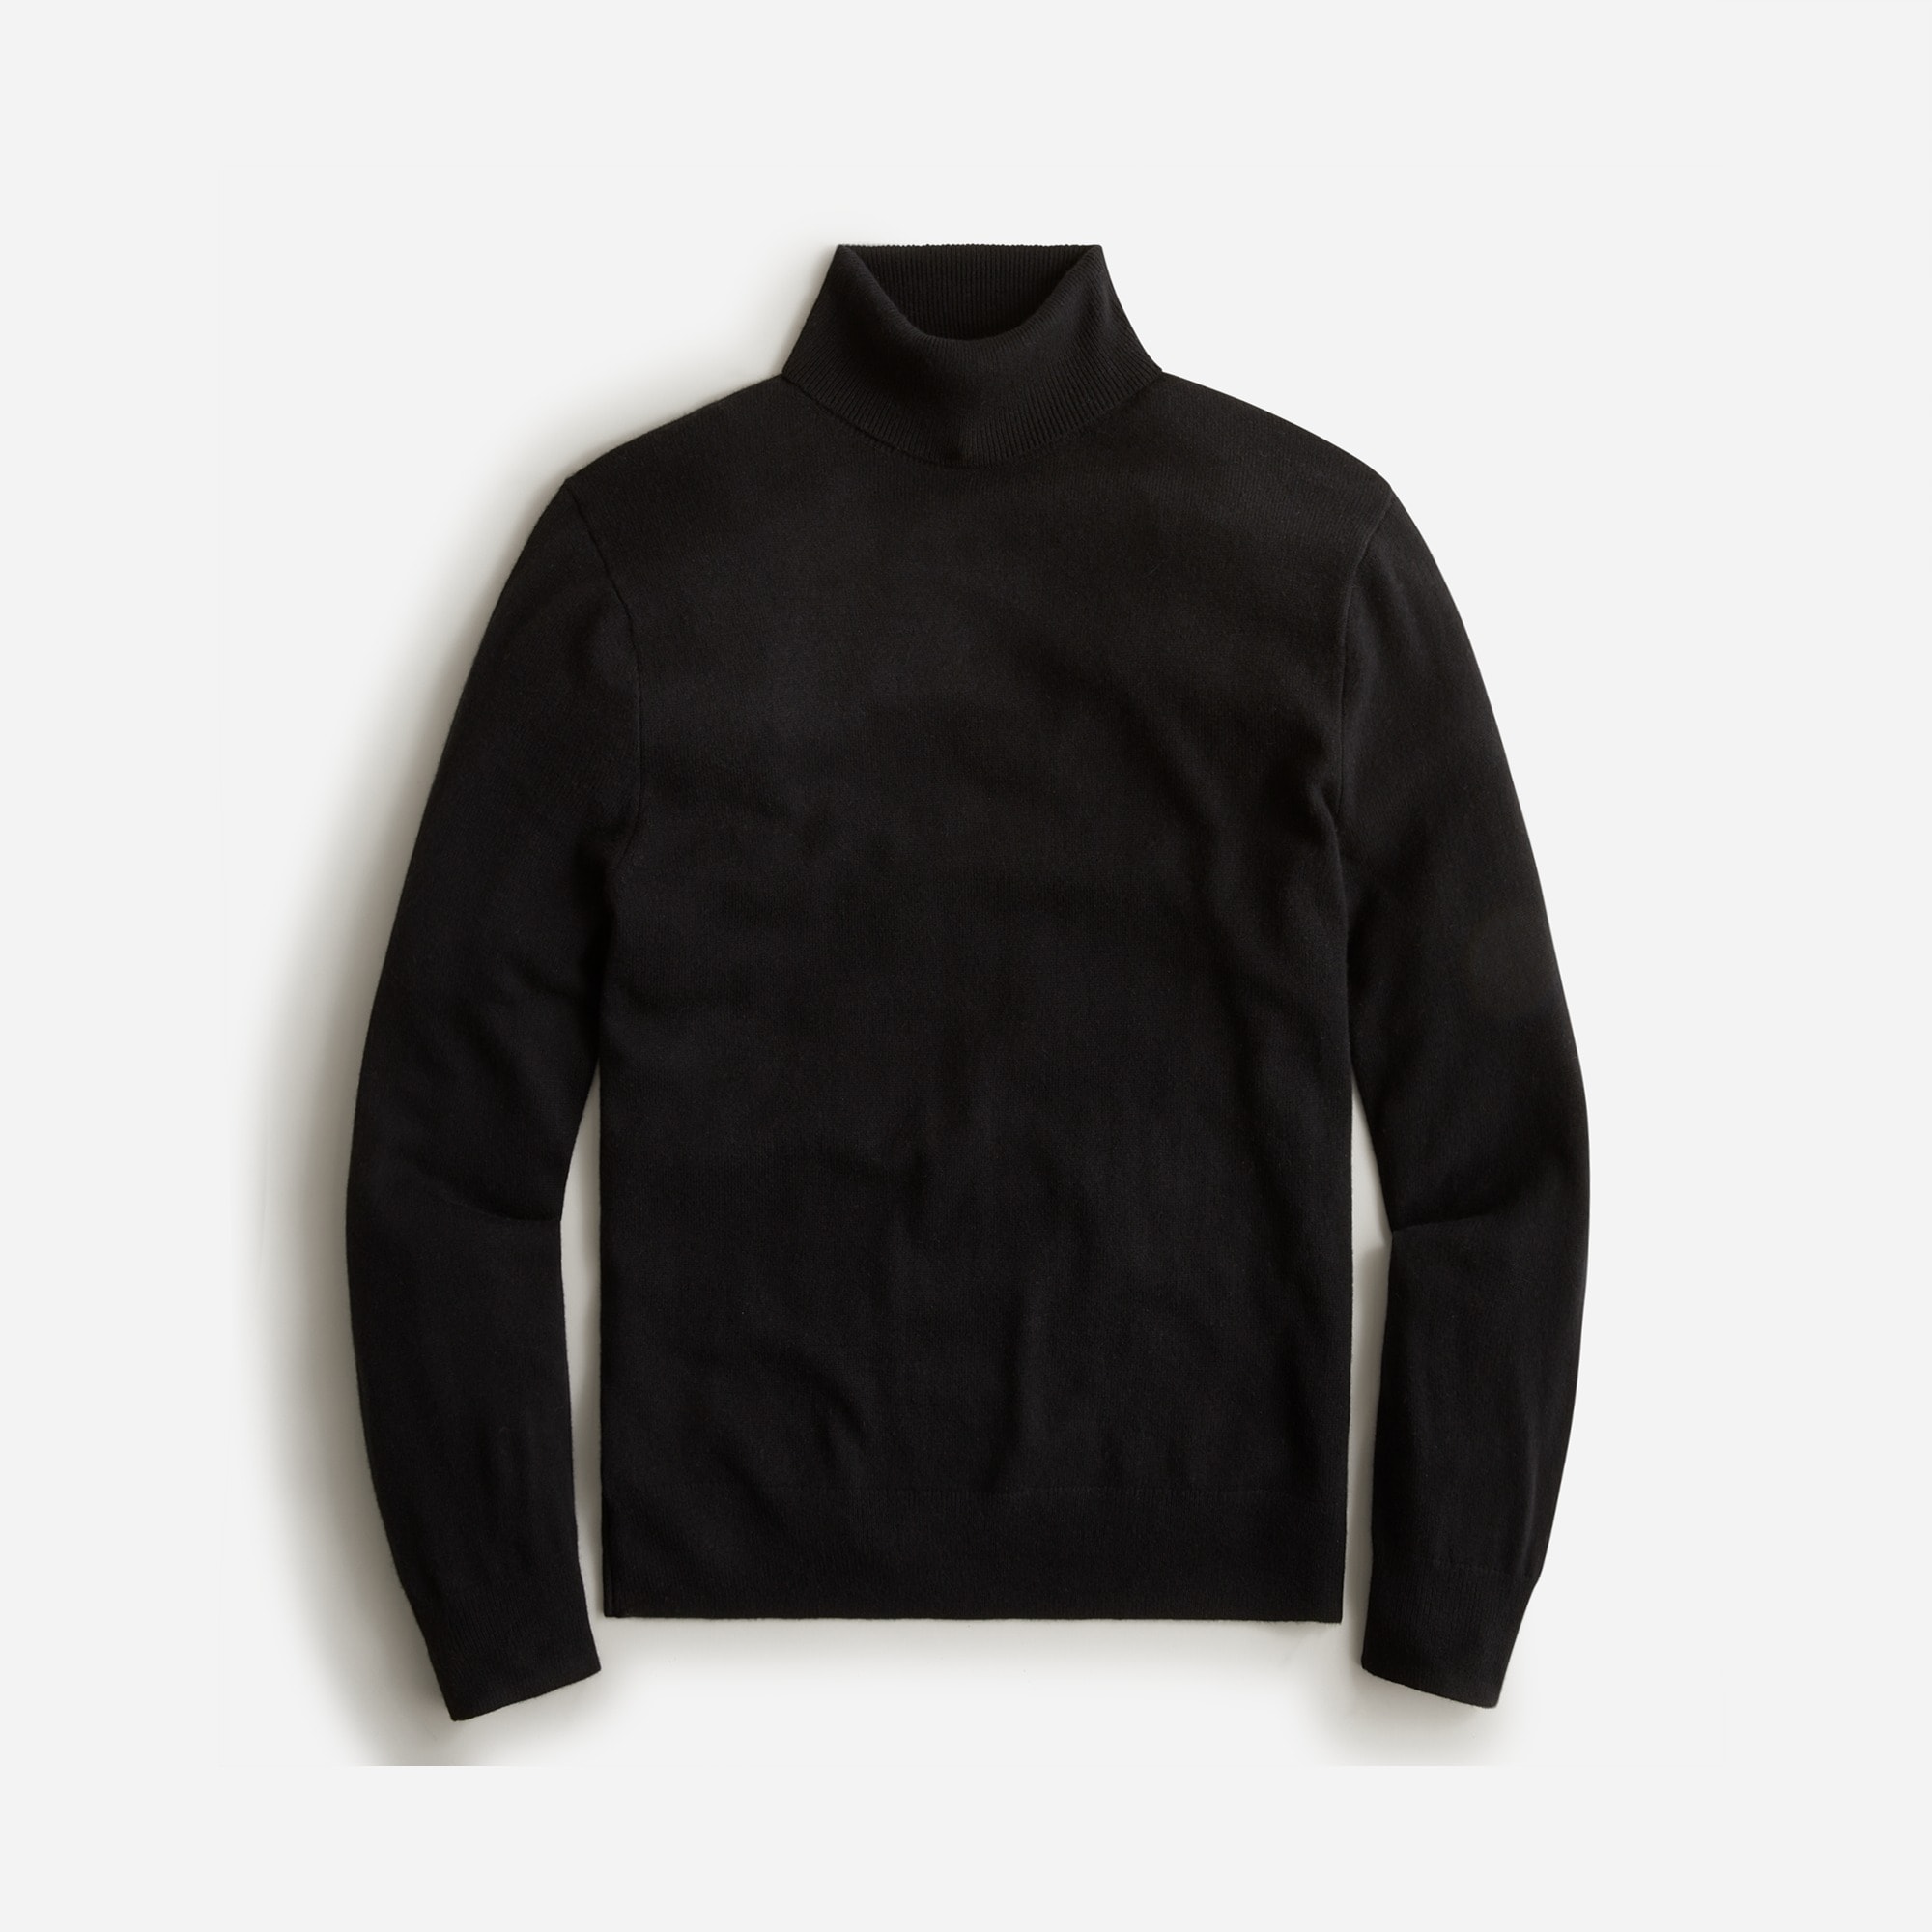  Cashmere turtleneck sweater